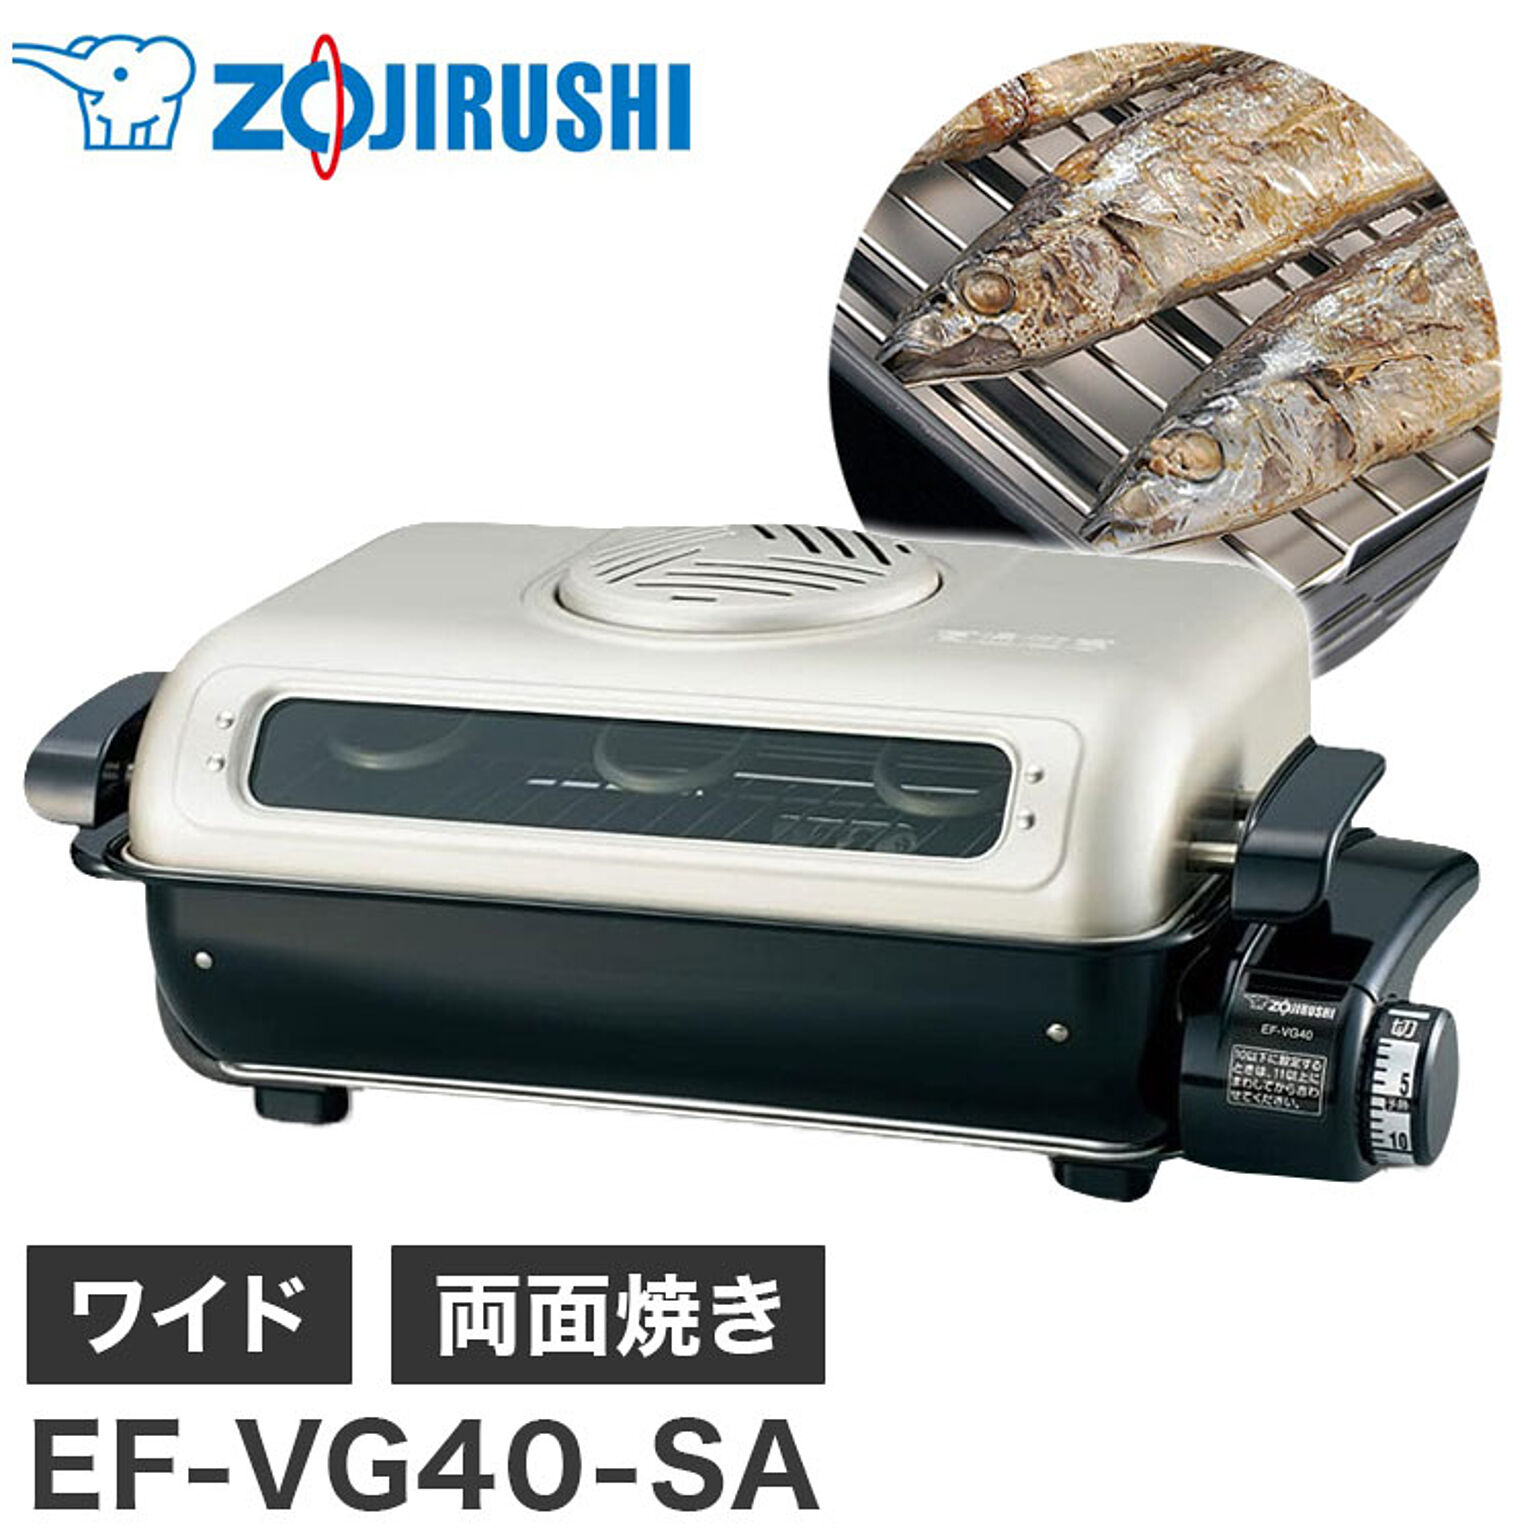 象印 フィッシュロースター EF-VG40-SA 魚焼きグリル 魚焼き器 両面焼き 分解洗い&プラチナ触媒フィルター シルバー さんま 焼き魚 ワイド 35cm ZOJIRUSHI